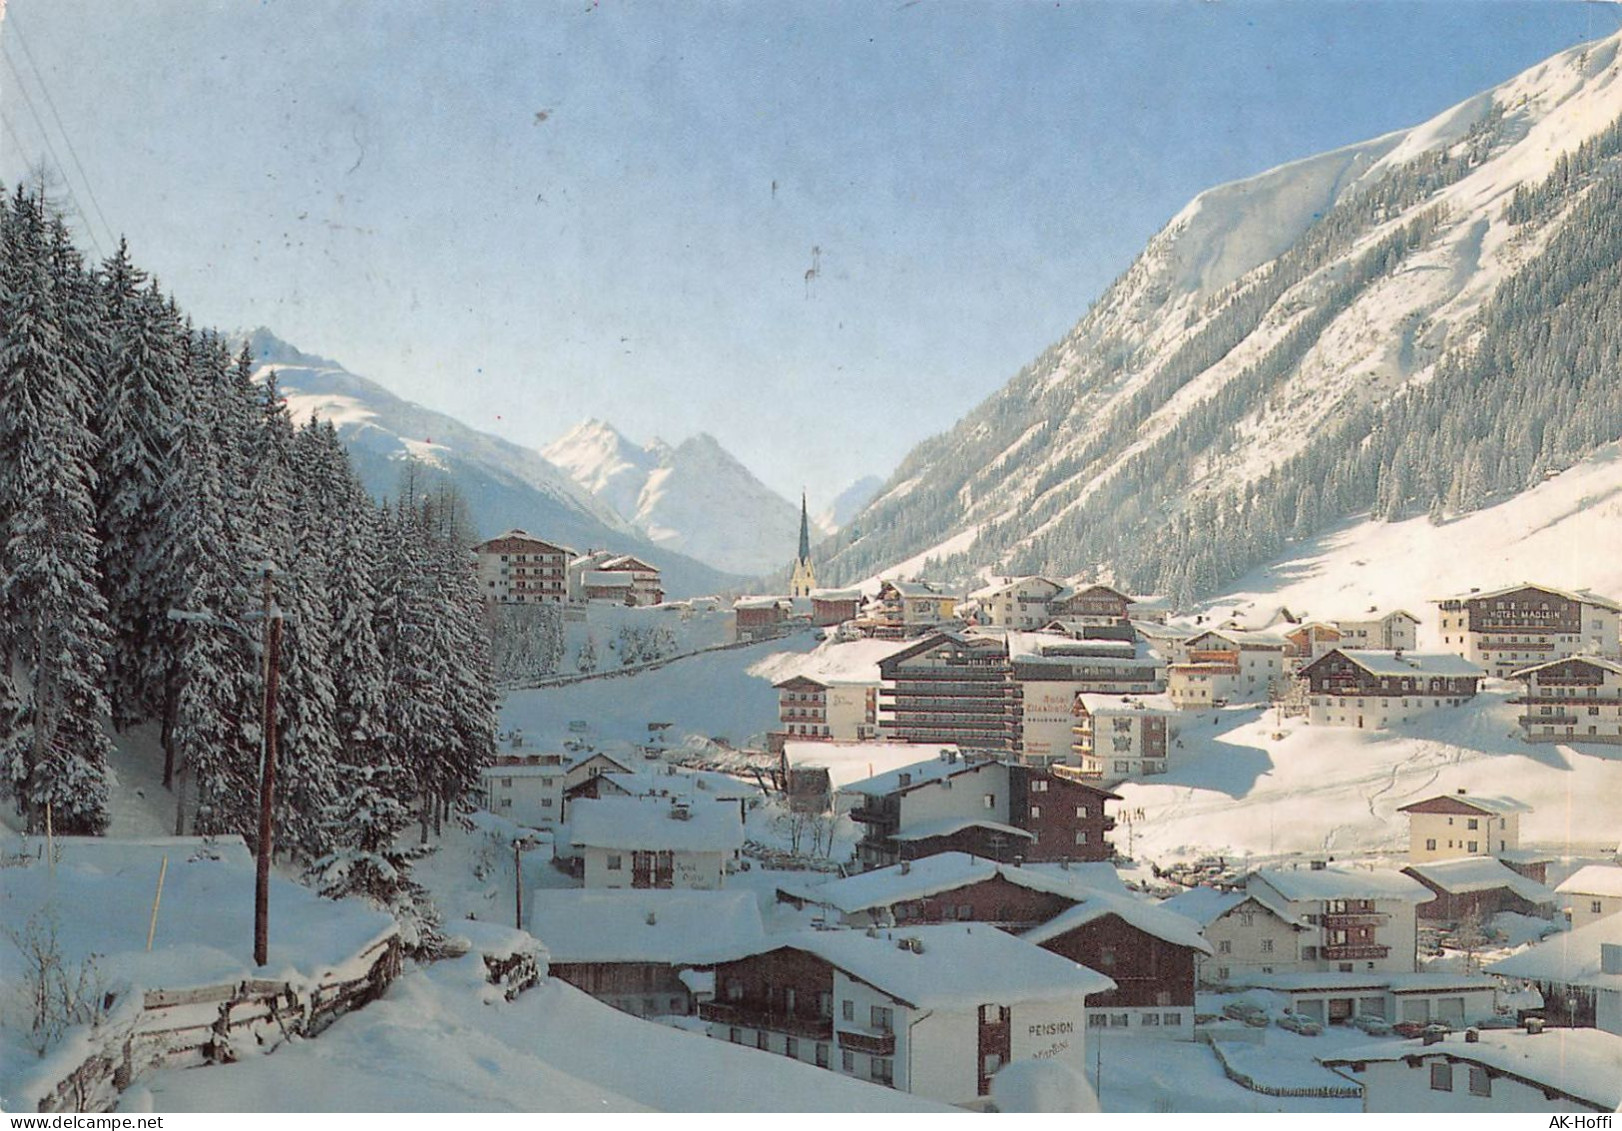 Wintersportort Ischgl 1376 M - Paznauntal - Tirol - Ischgl